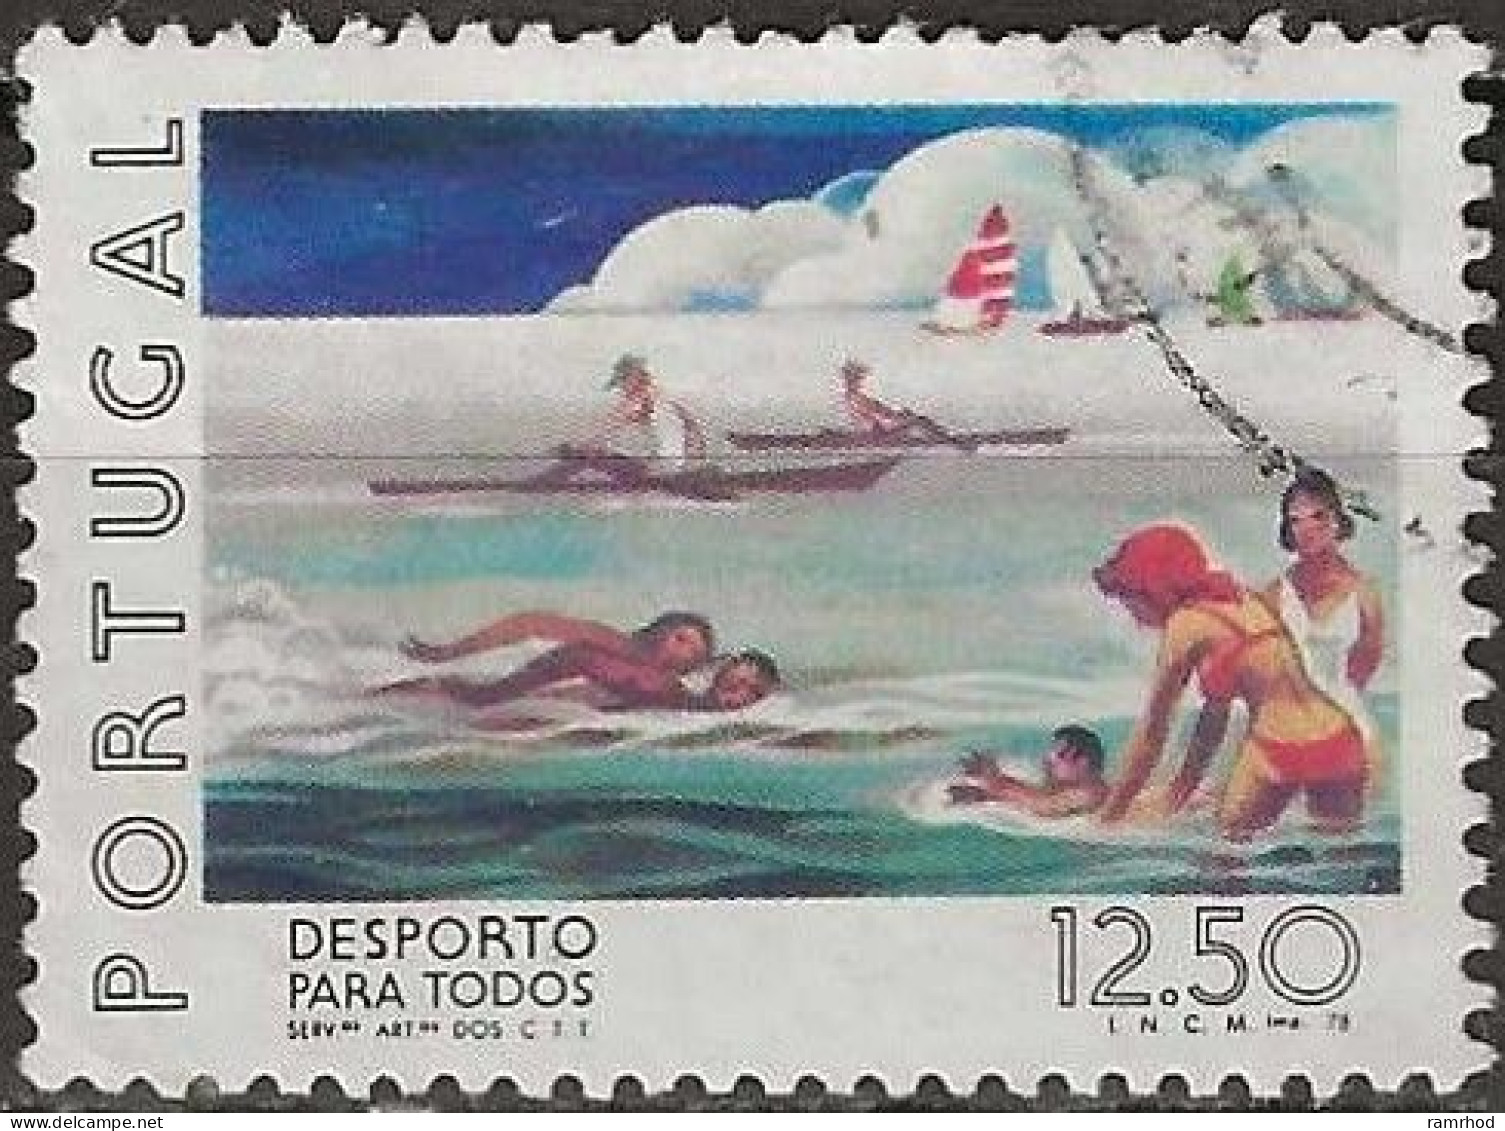 PORTUGAL 1978 Sport For All - 12e.50 - Swimming FU - Usado